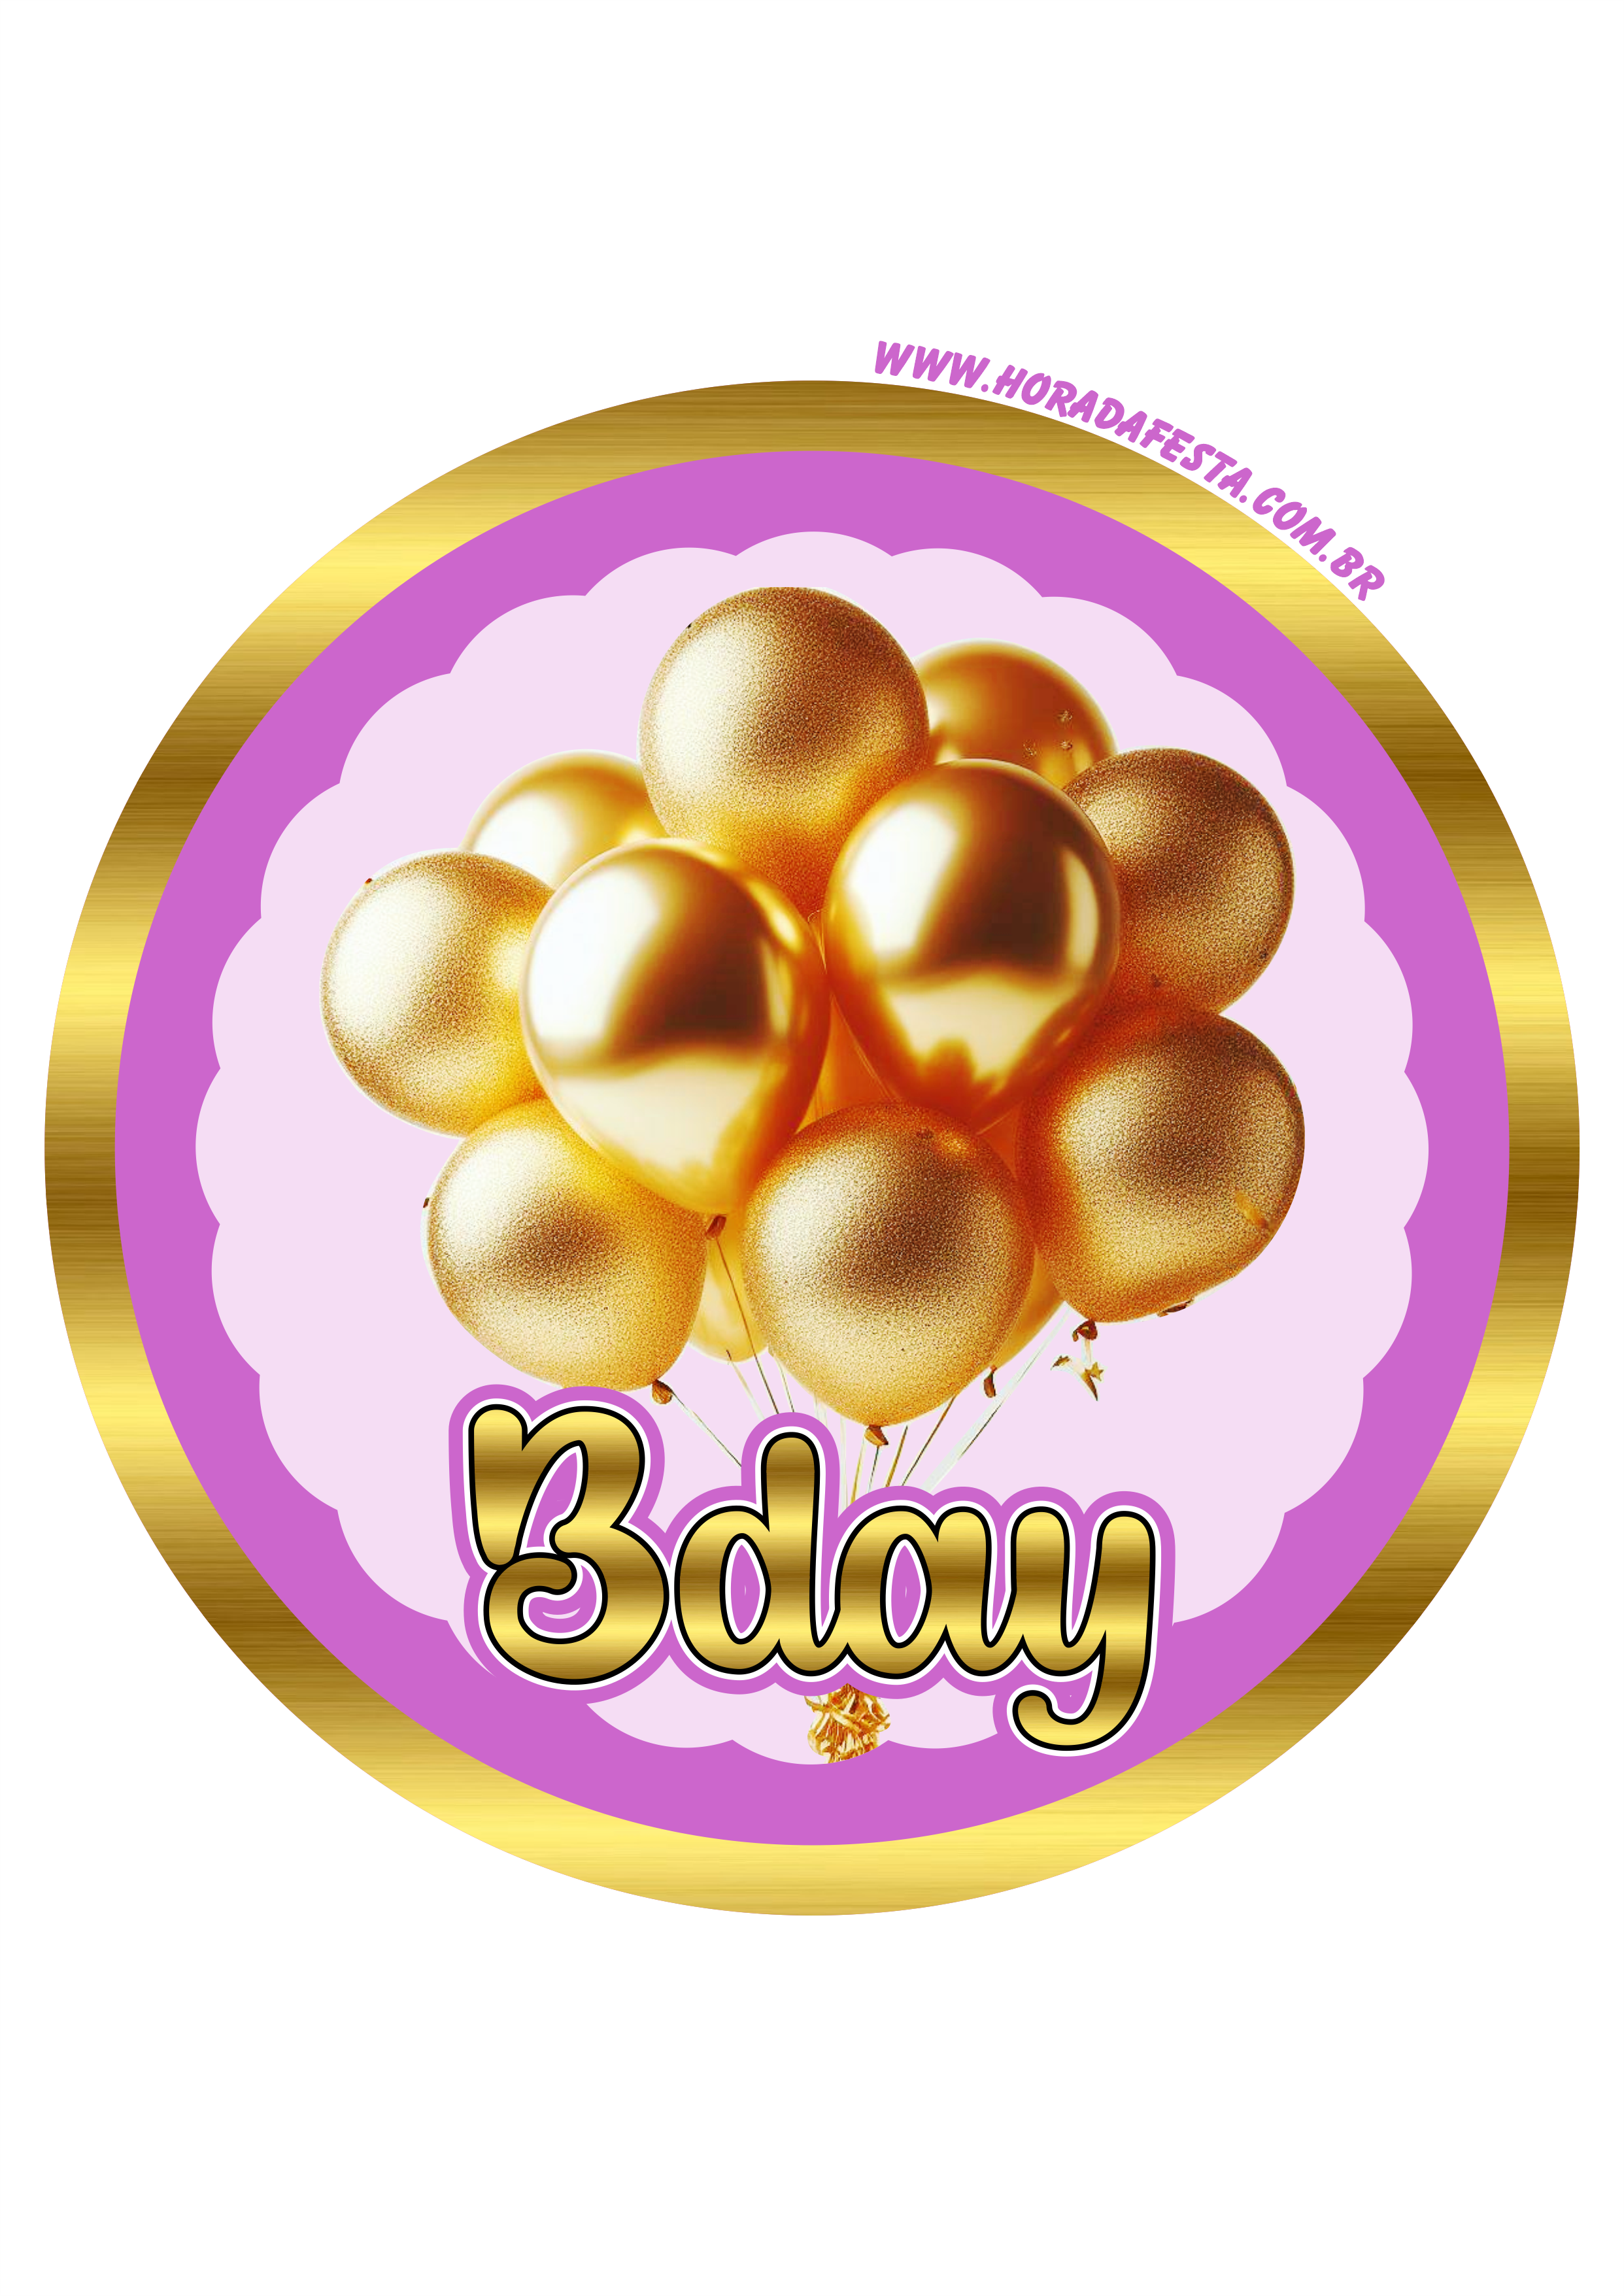 Bday dourado adesivo redondo para decoração de festa de aniversário happy birthday png